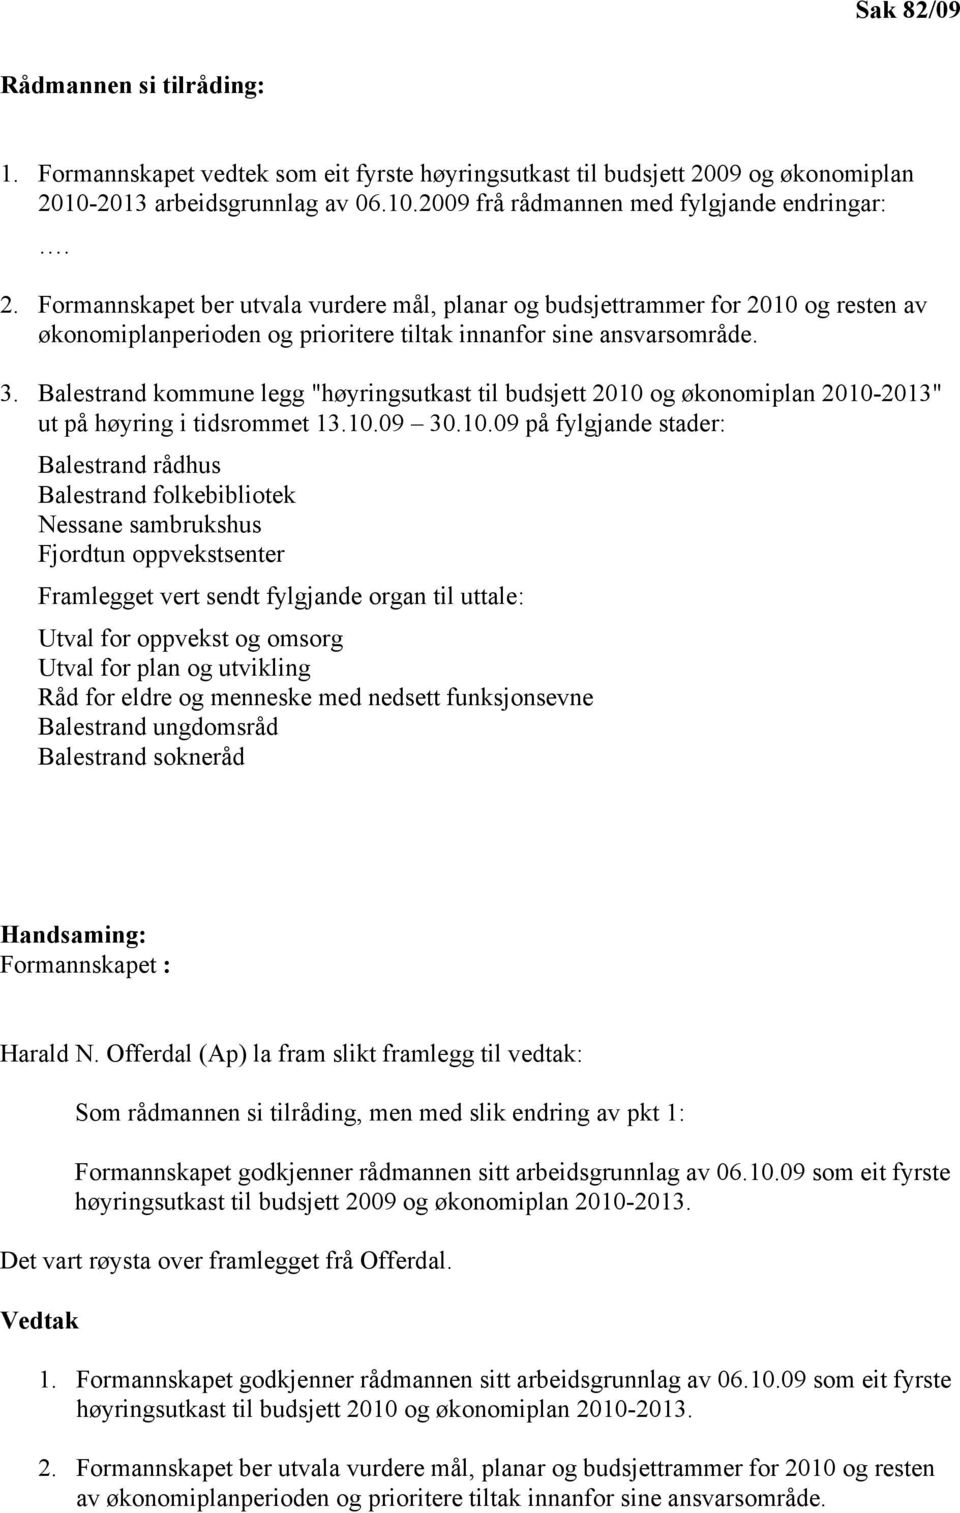 Balestrand kommune legg "høyringsutkast til budsjett 2010 